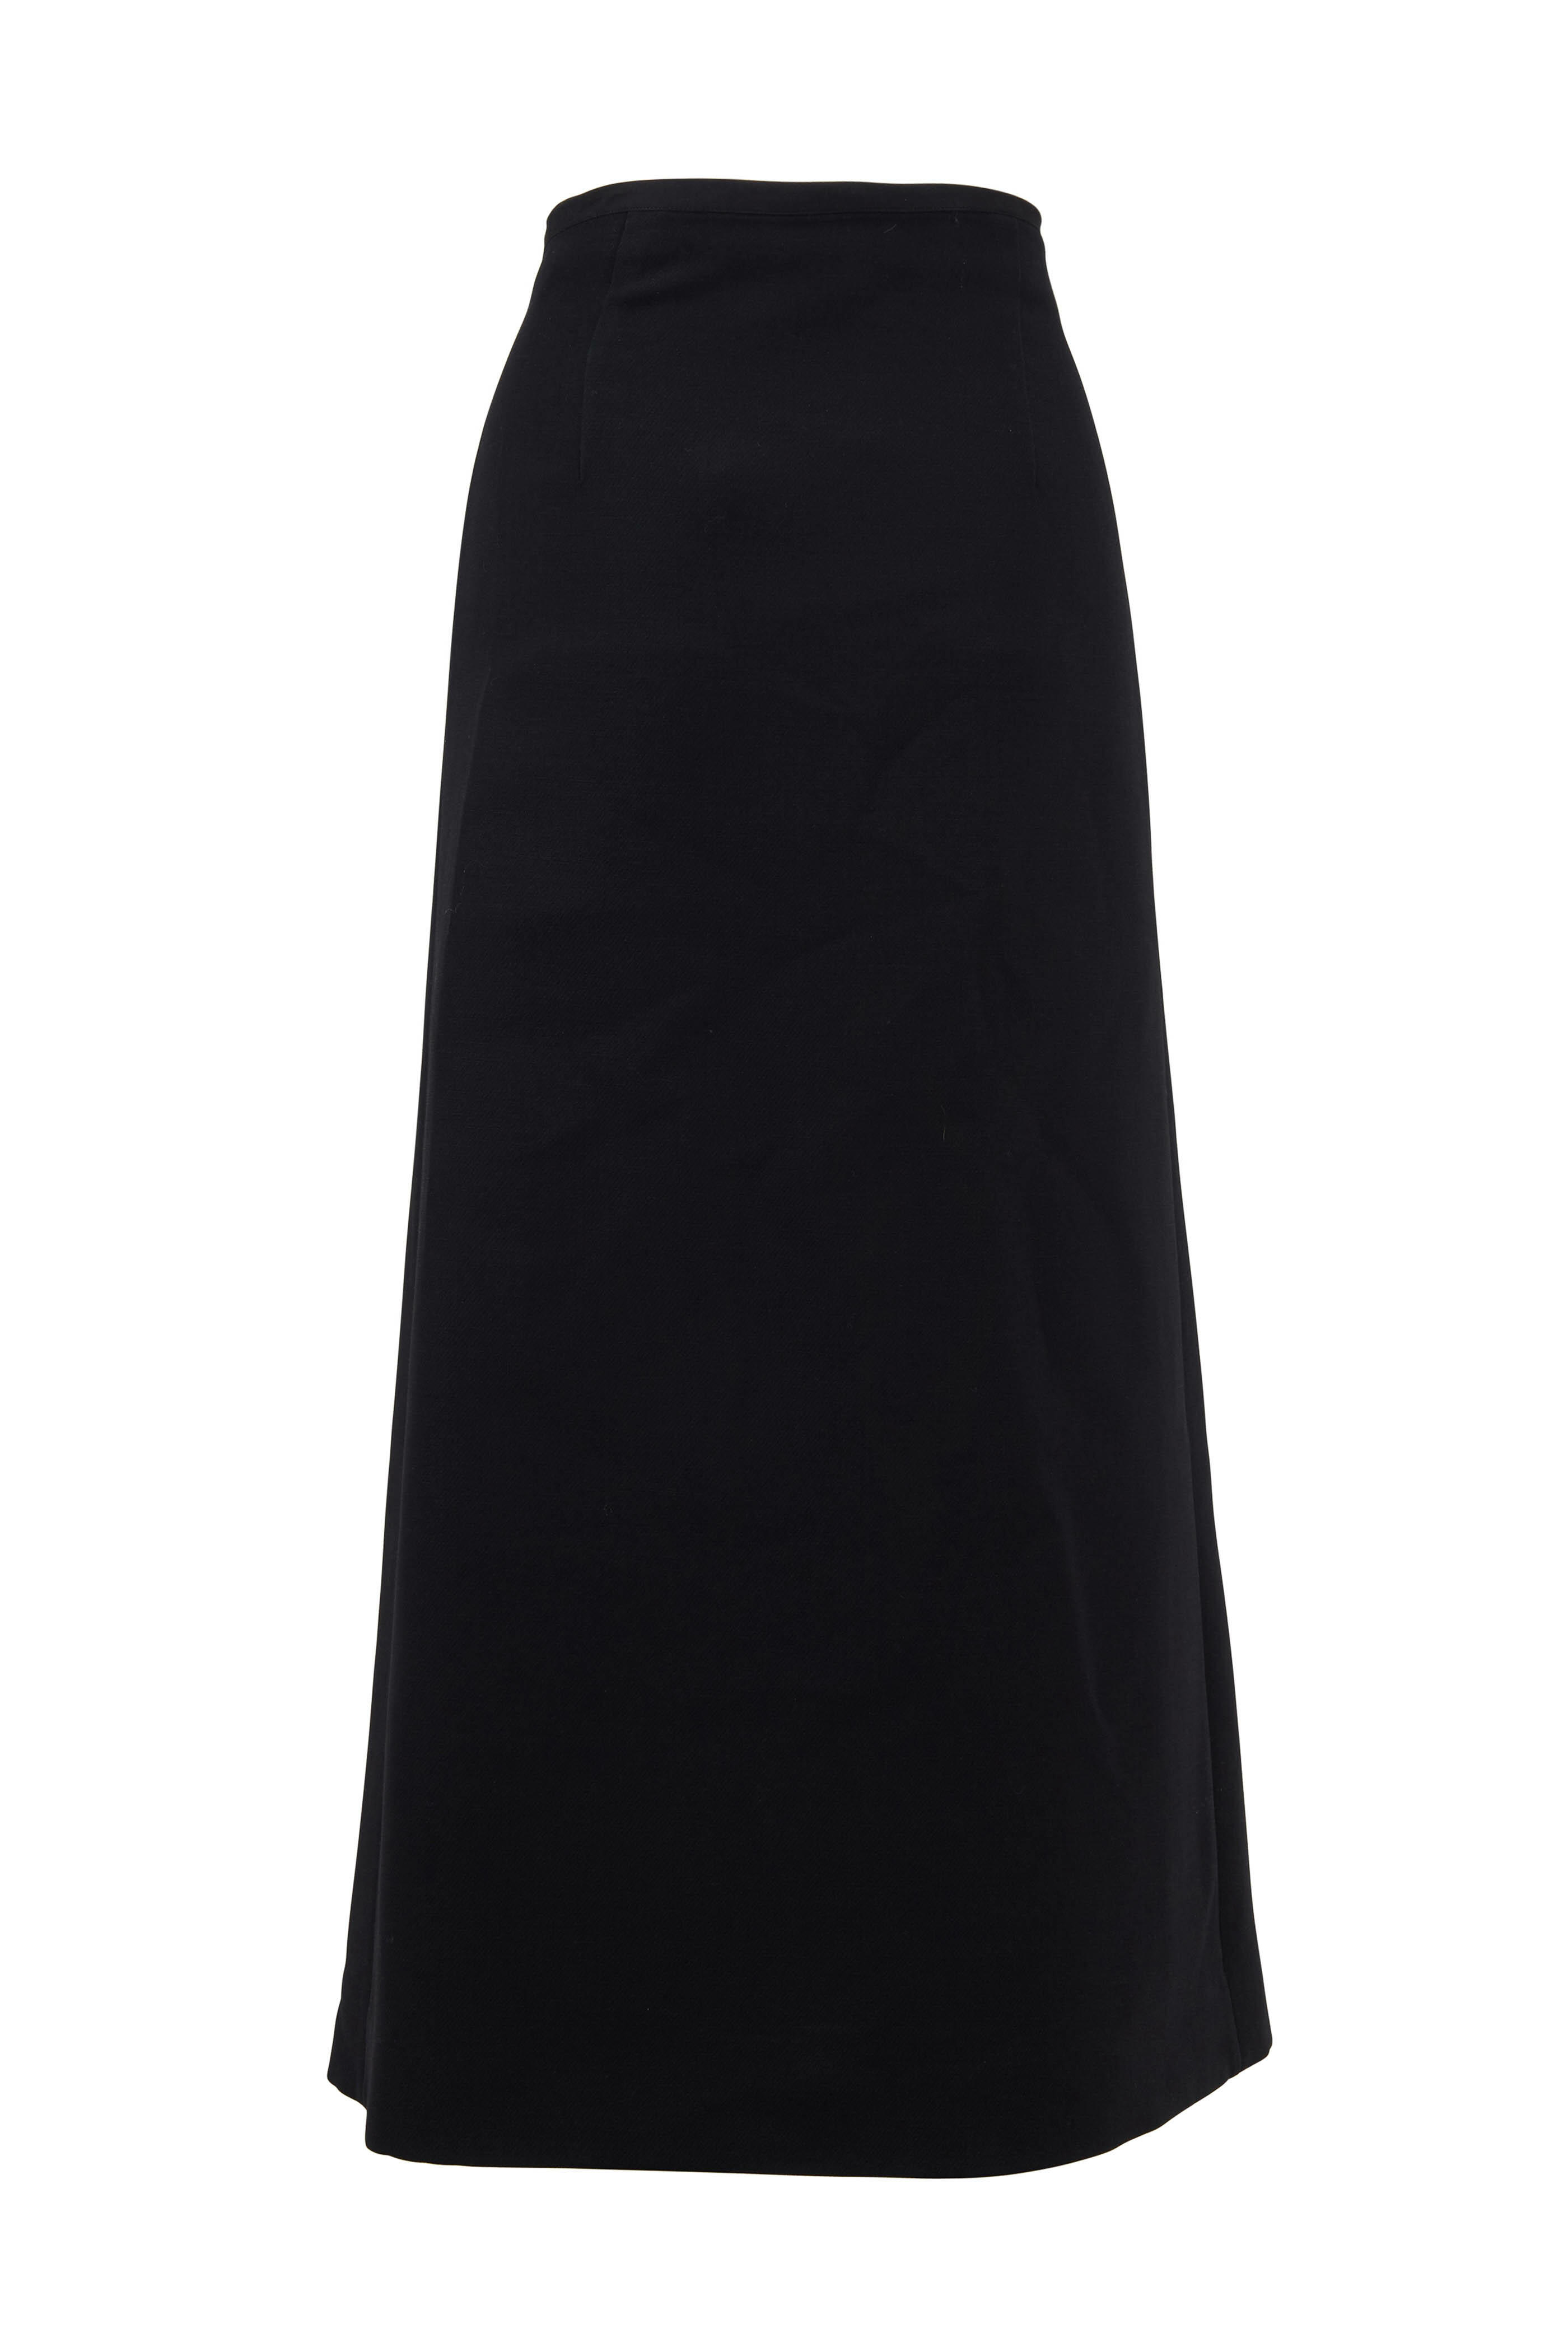 Off-White side-slit crepe midi skirt - Black